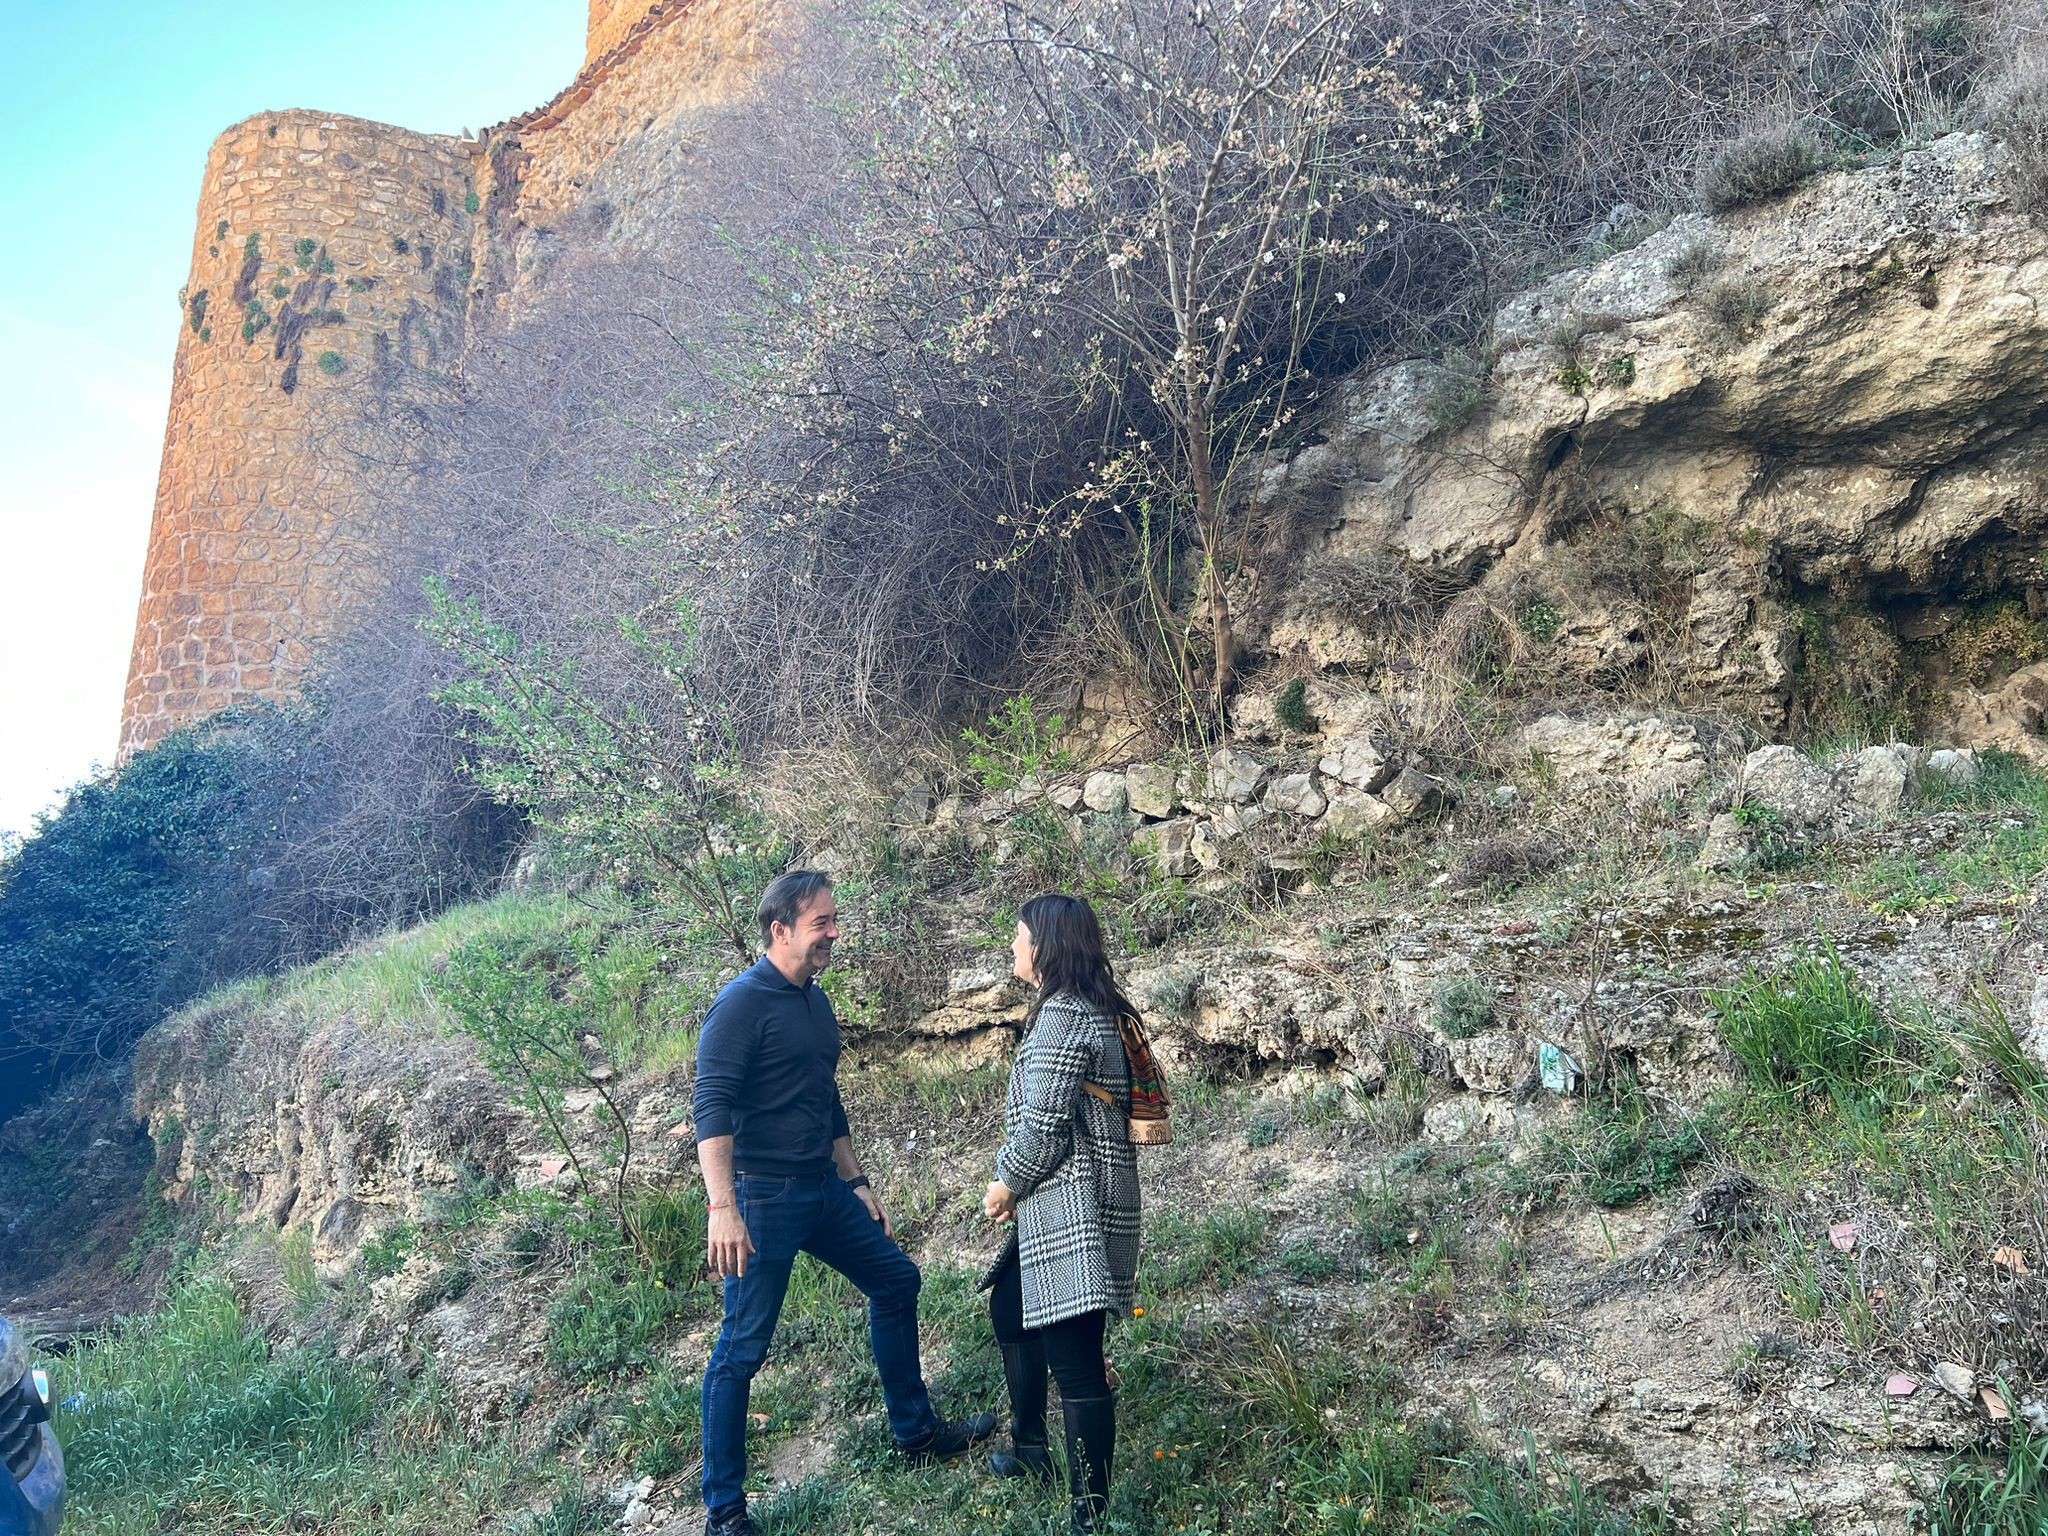 El diputado de Patrimonio, Miguel Ángel Valero, visita uno de los puntos de la muralla de Cañete junto a la alcaldesa de esta localidad, Montse Poyatos.